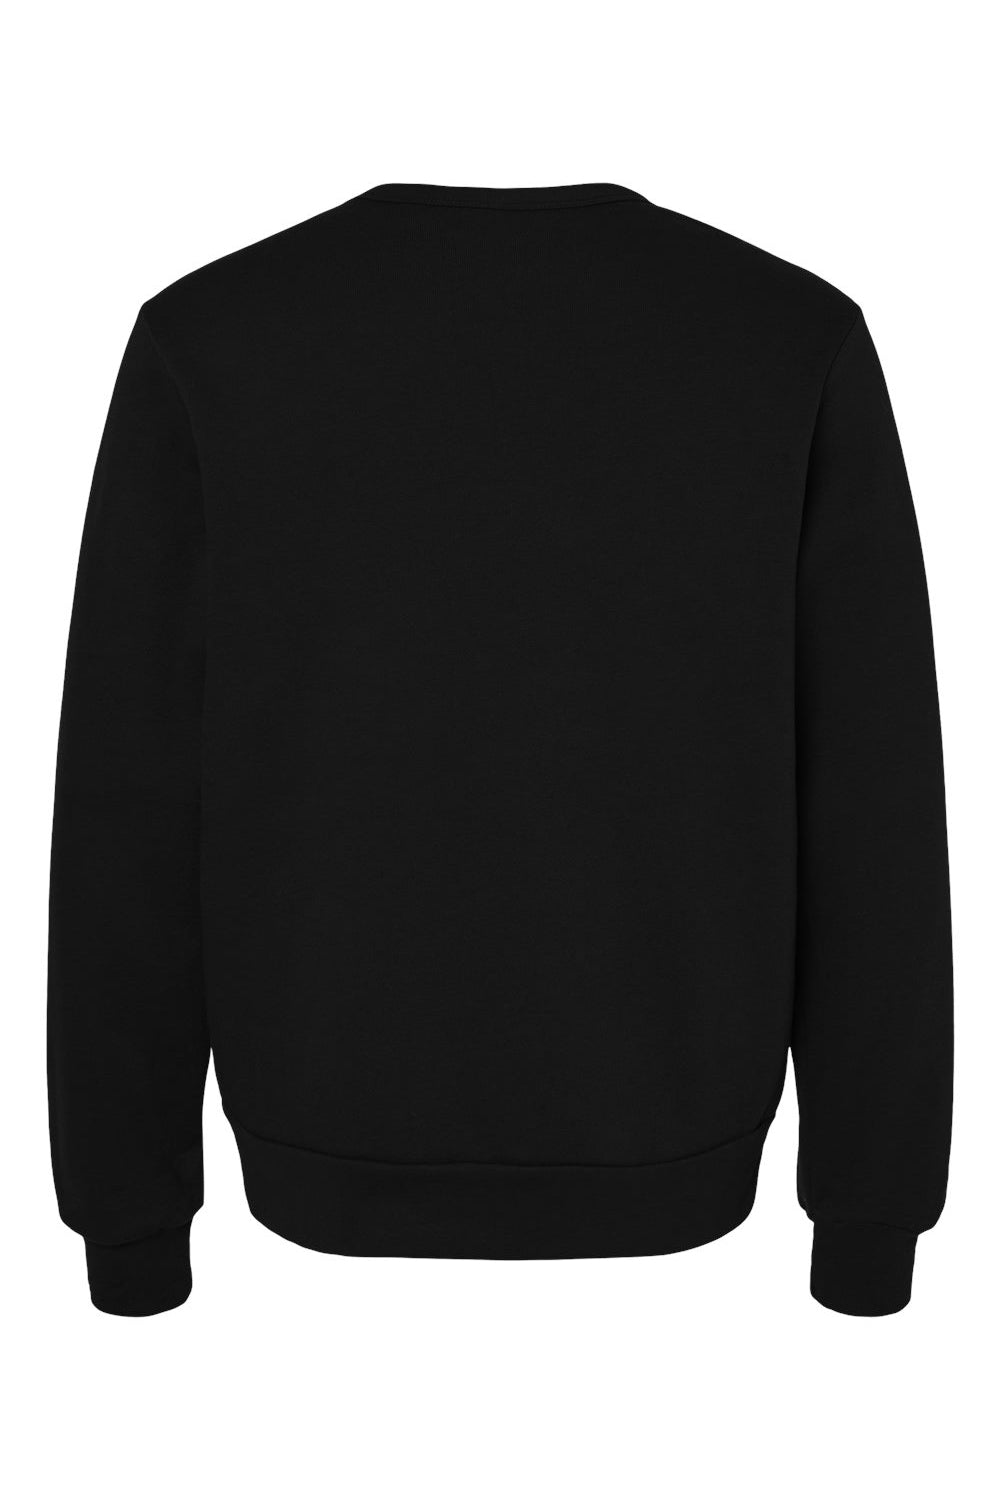 Bella + Canvas 3911 Mens Classic Crewneck Sweatshirt Black Flat Back